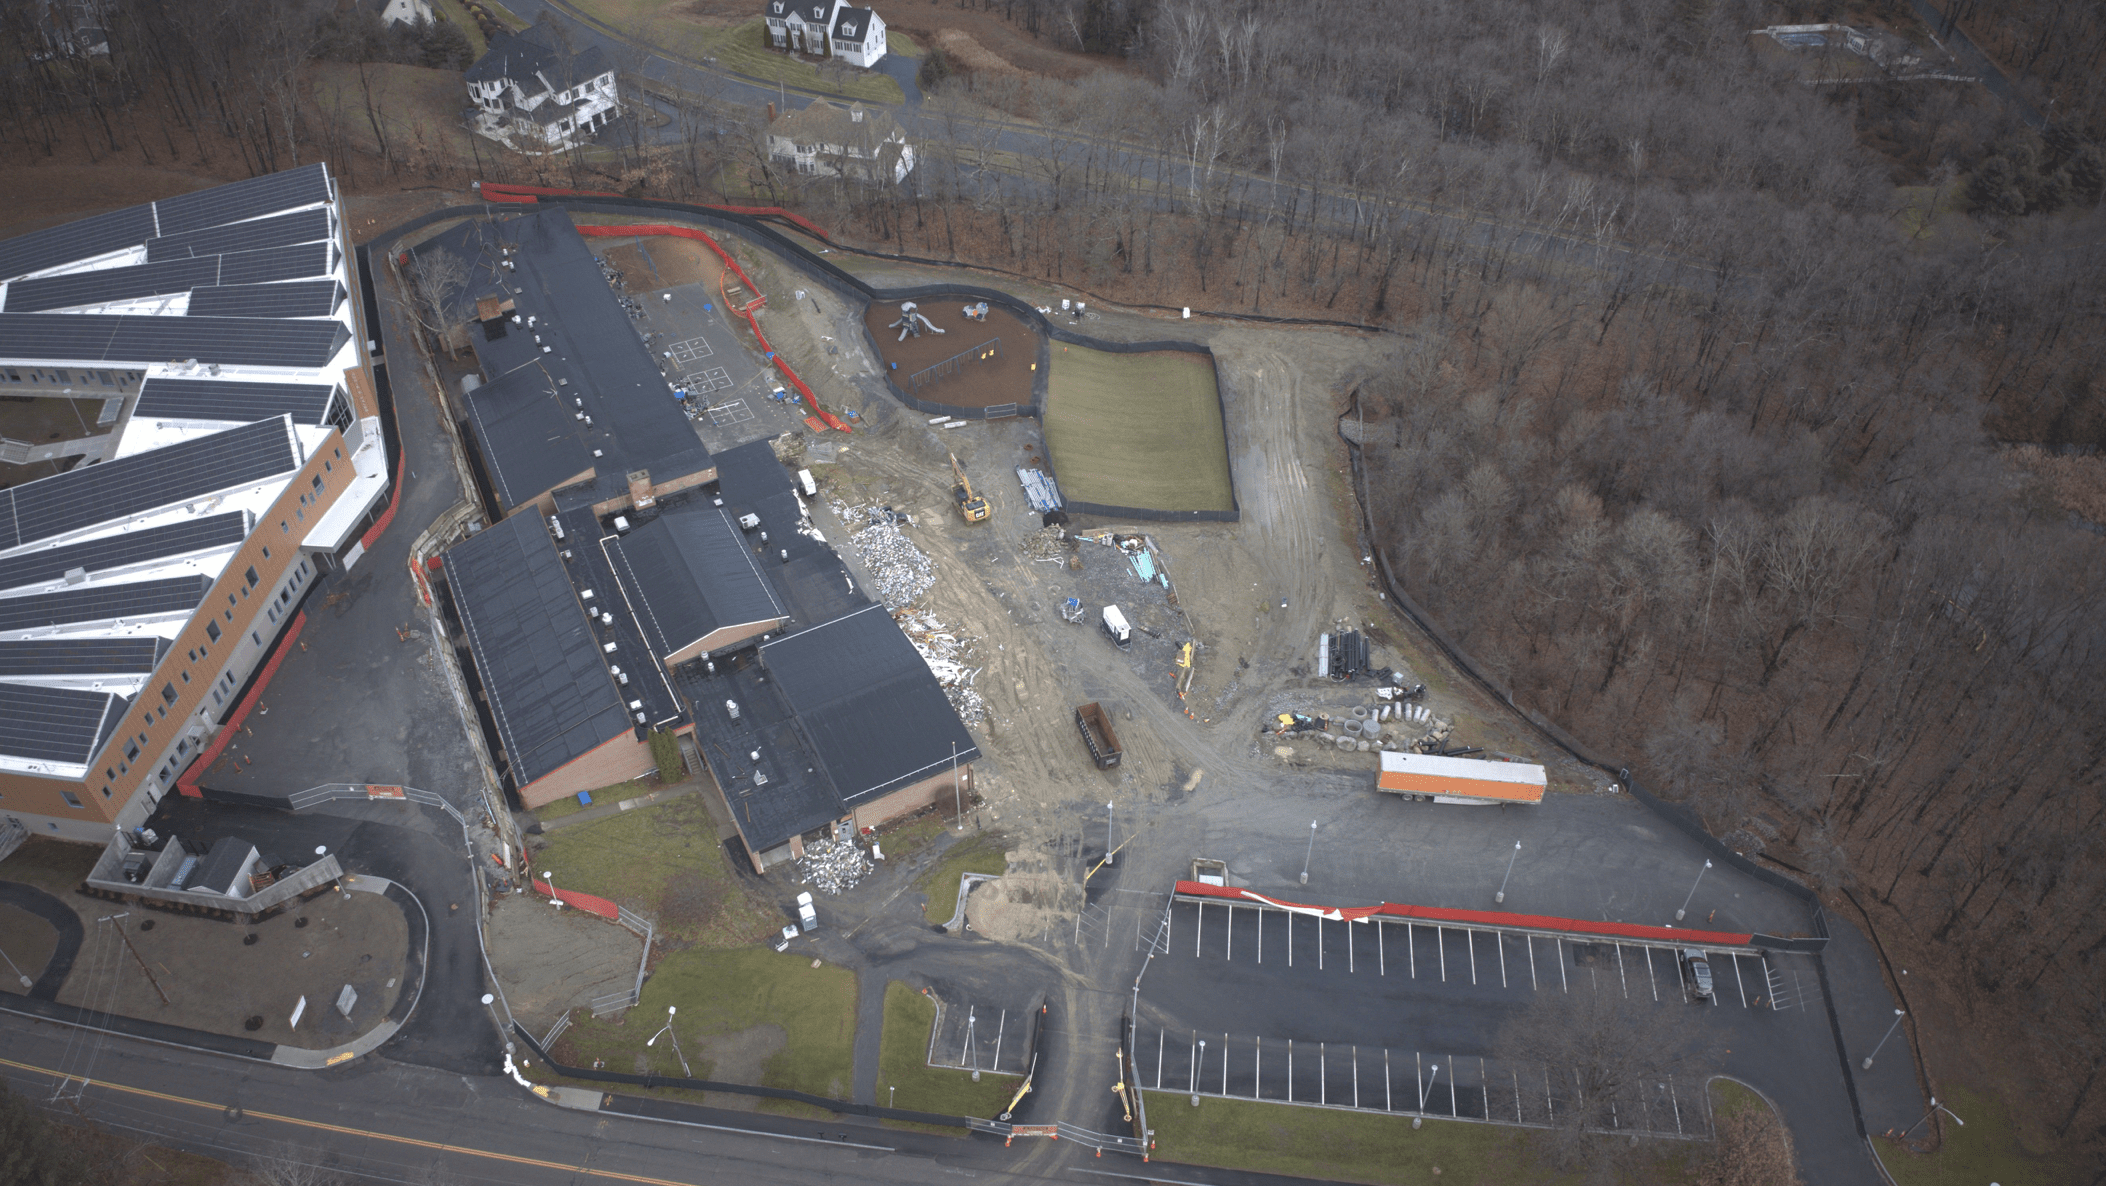 UPDATE: Demolition underway at old Fales school